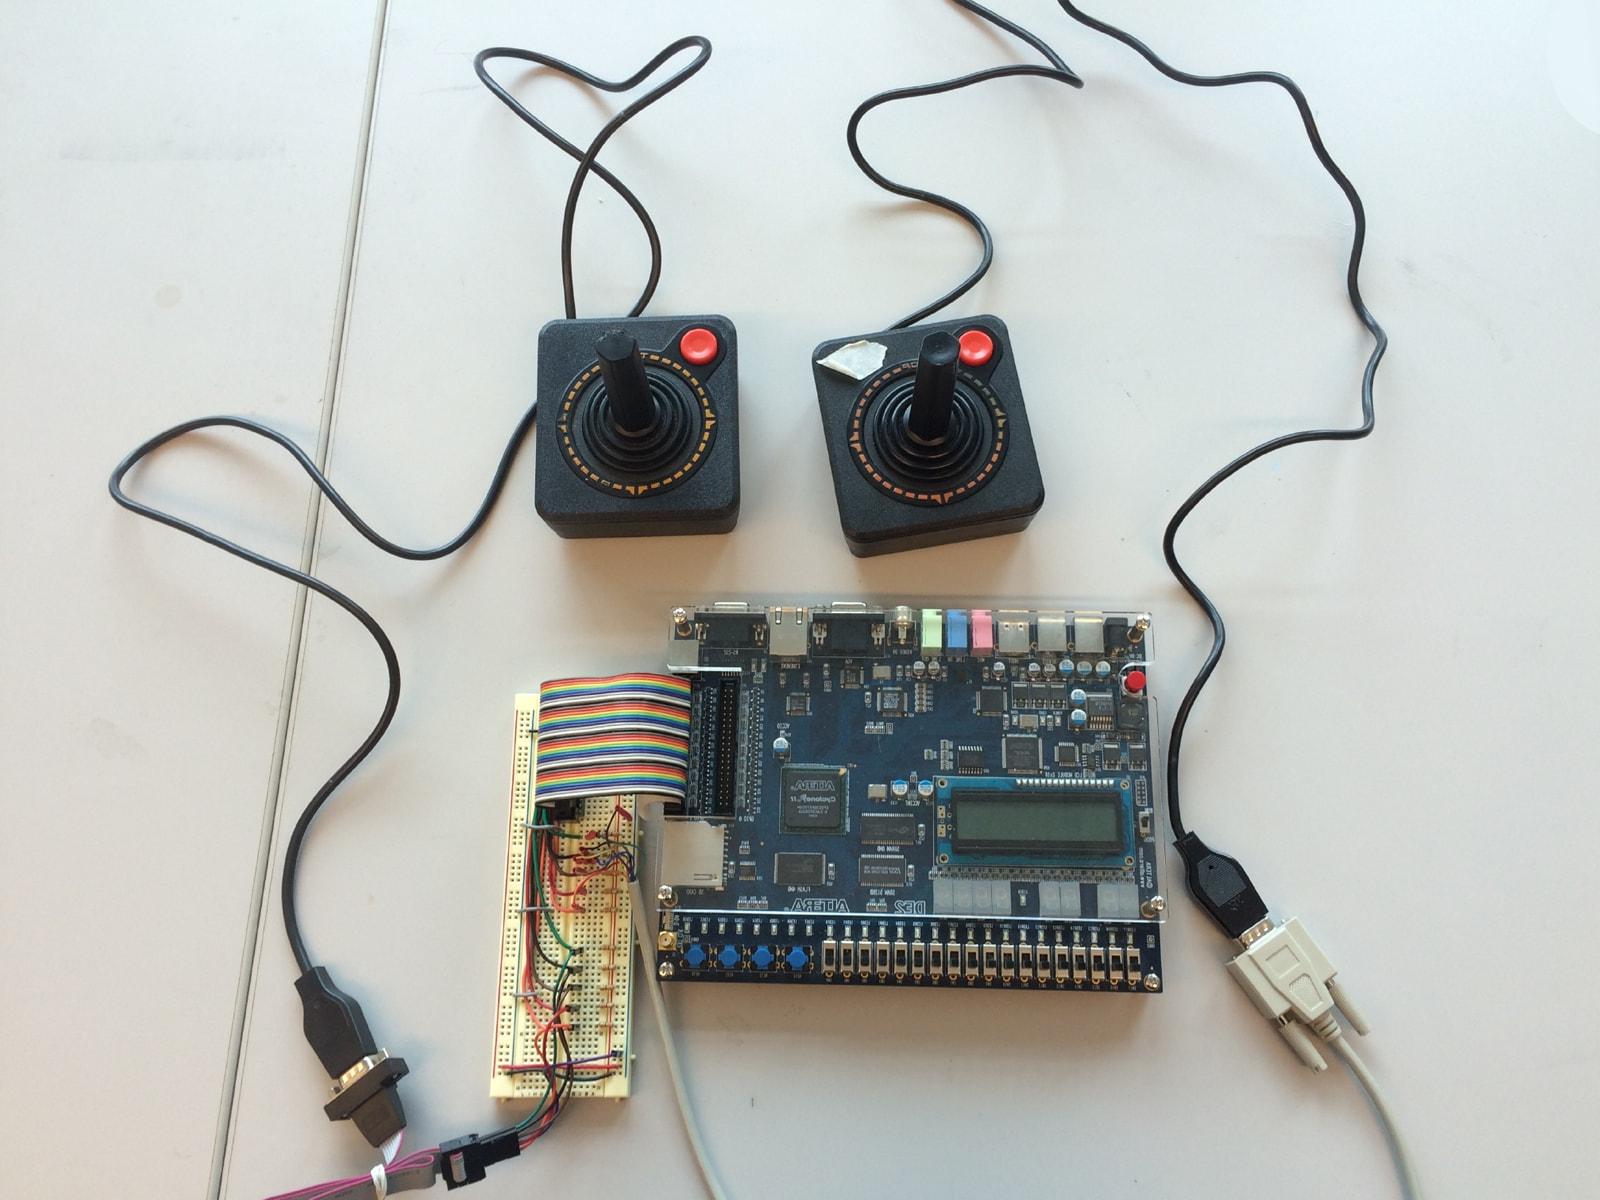 Two Atari joysticks connected to an Altera DE2 board.